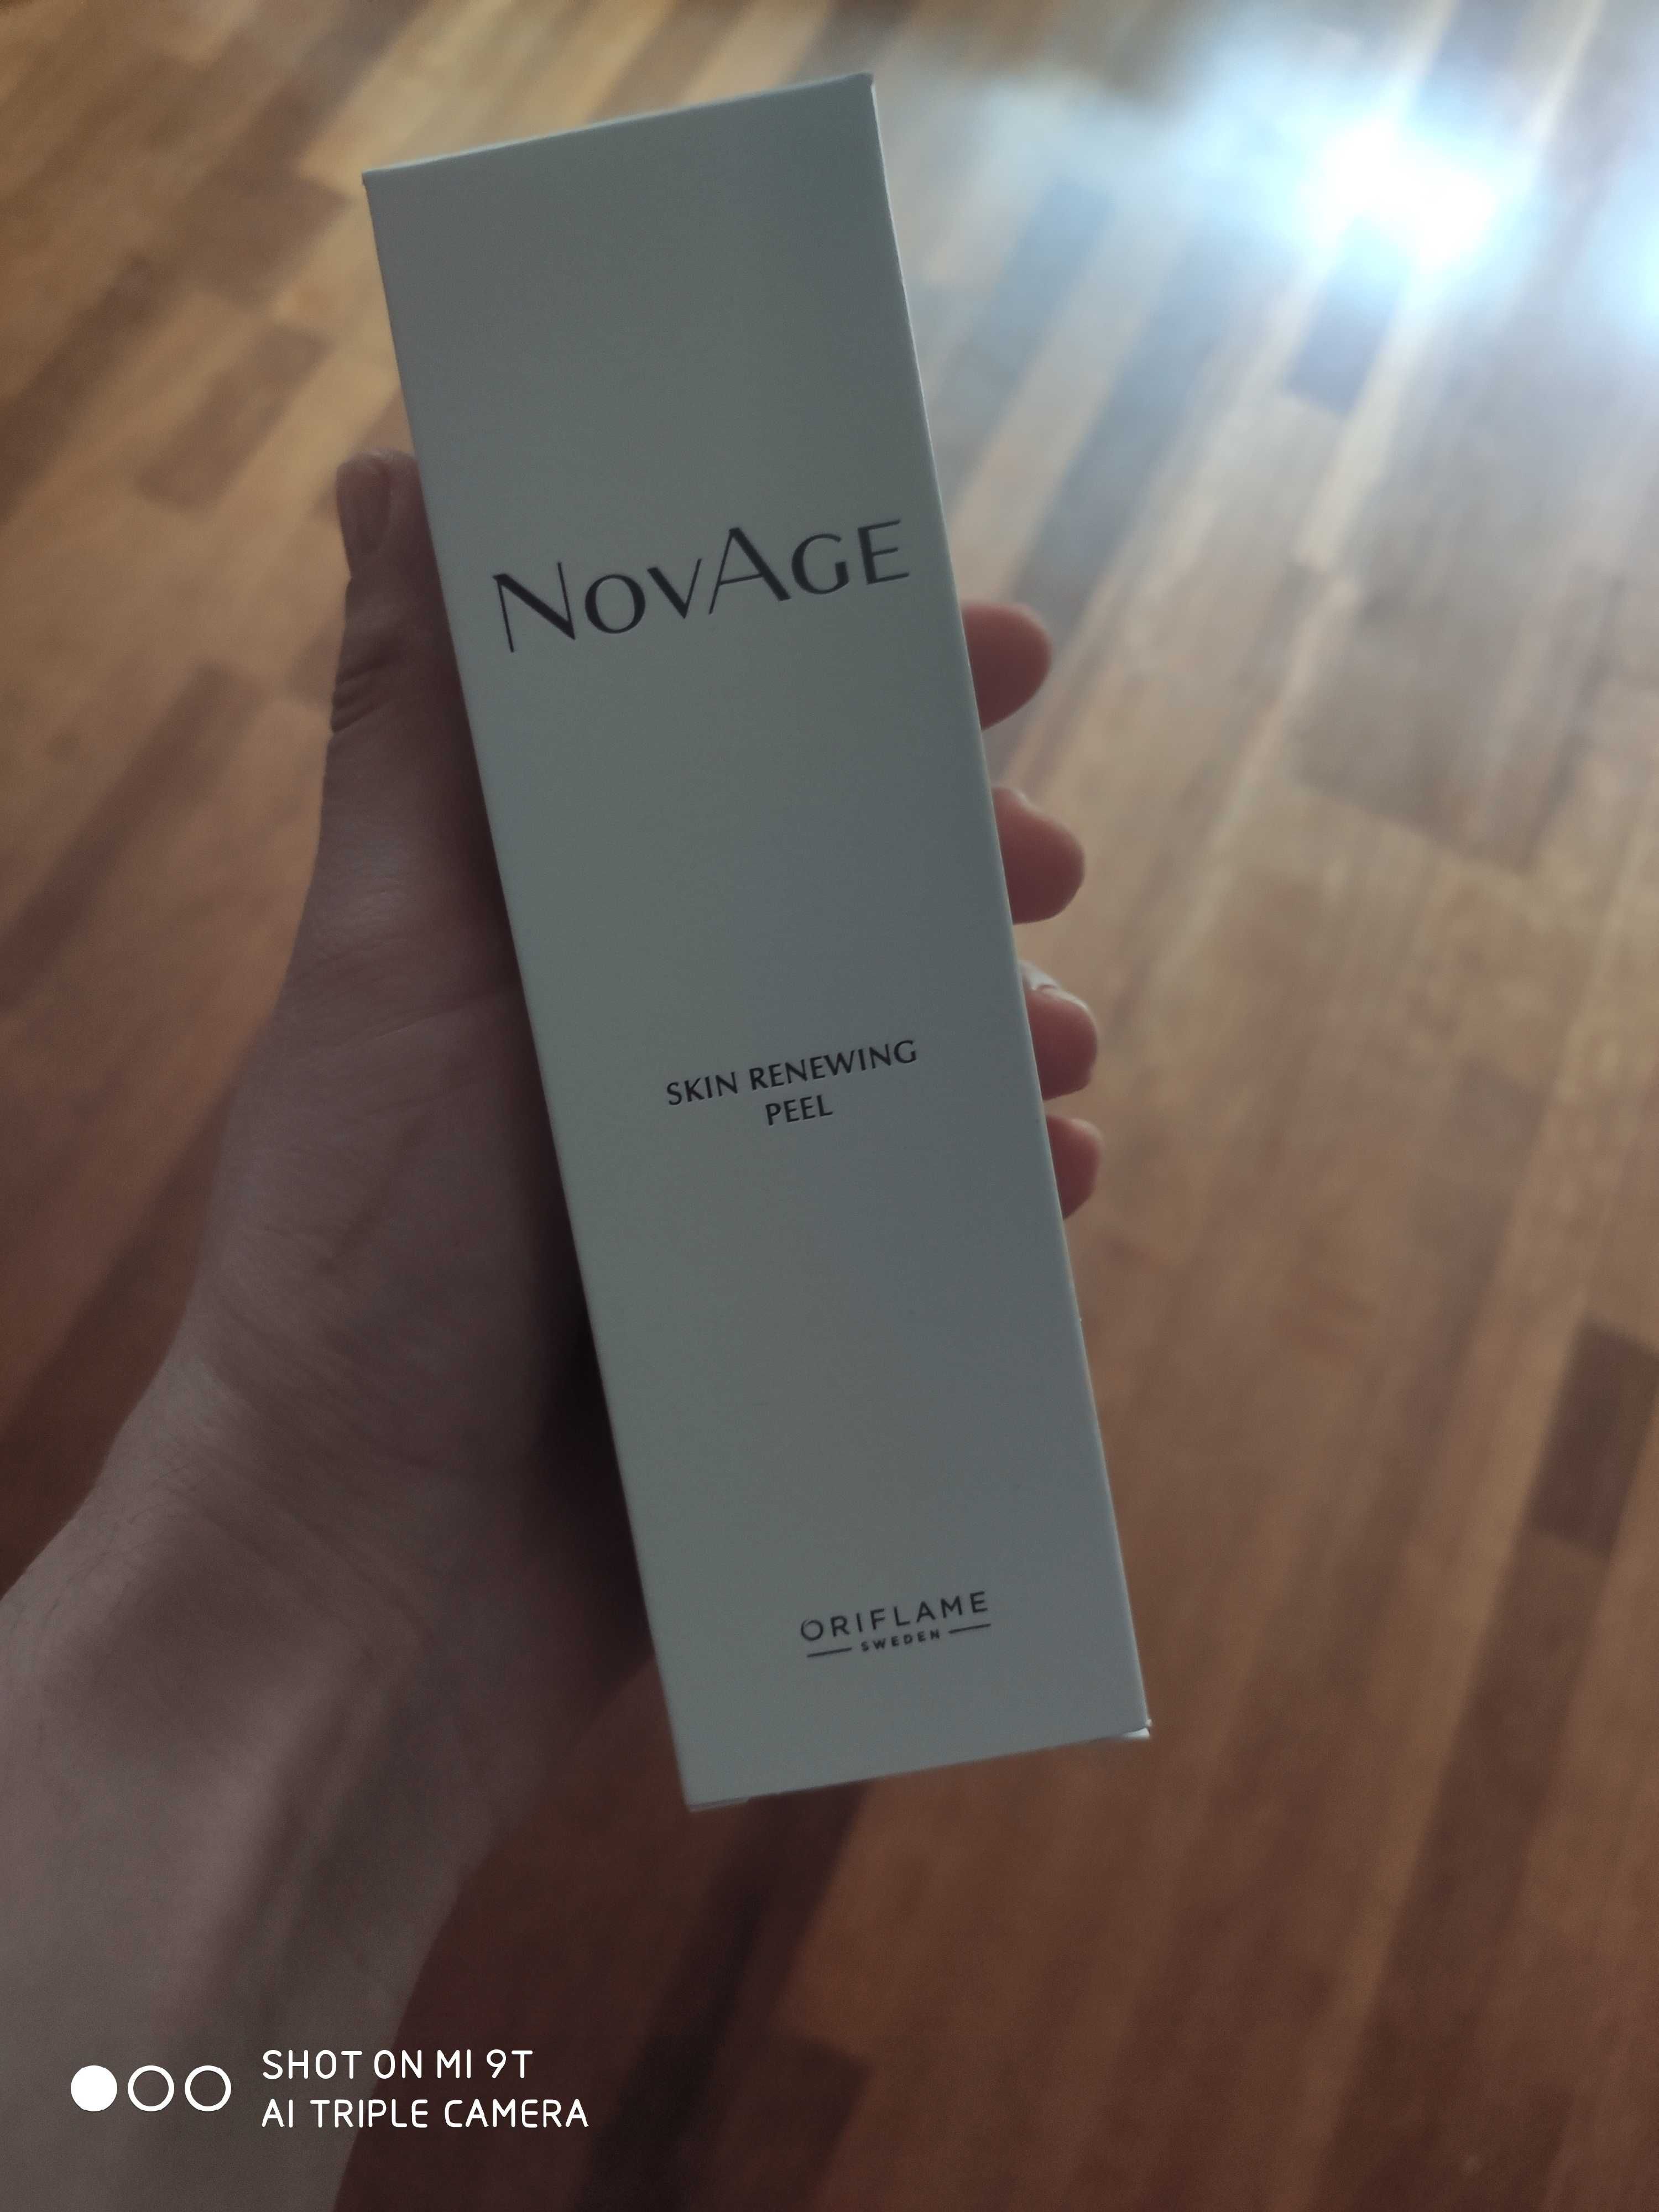 Novage skin renewing peel 33988